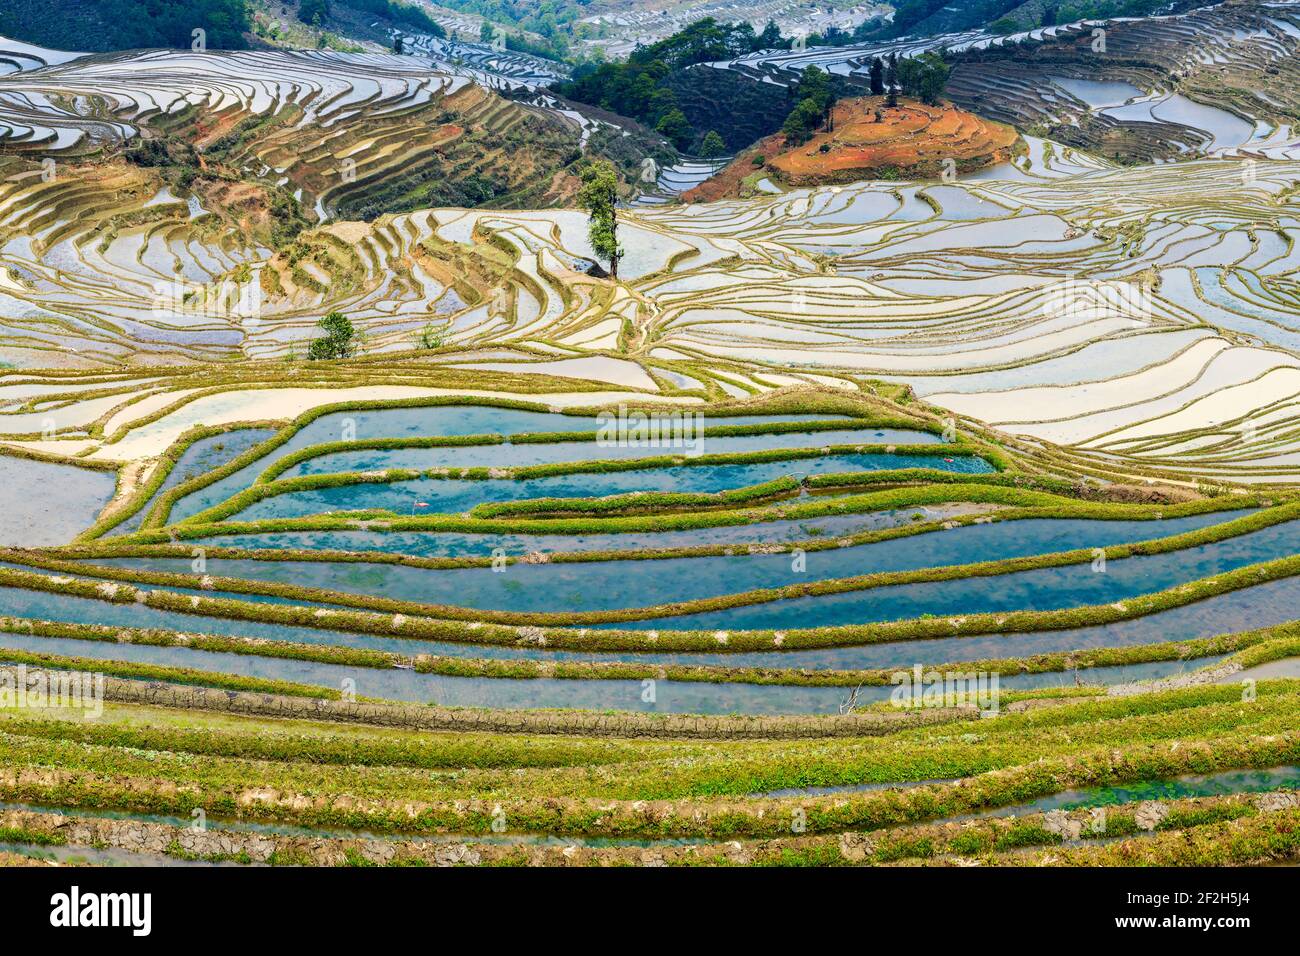 Geografia / viaggio, Cina, Yunnan, impressionanti risaie terrazze culture della regione di Yuanyang nel Duo Yi , Additional-Rights-Clearance-Info-Not-Available Foto Stock